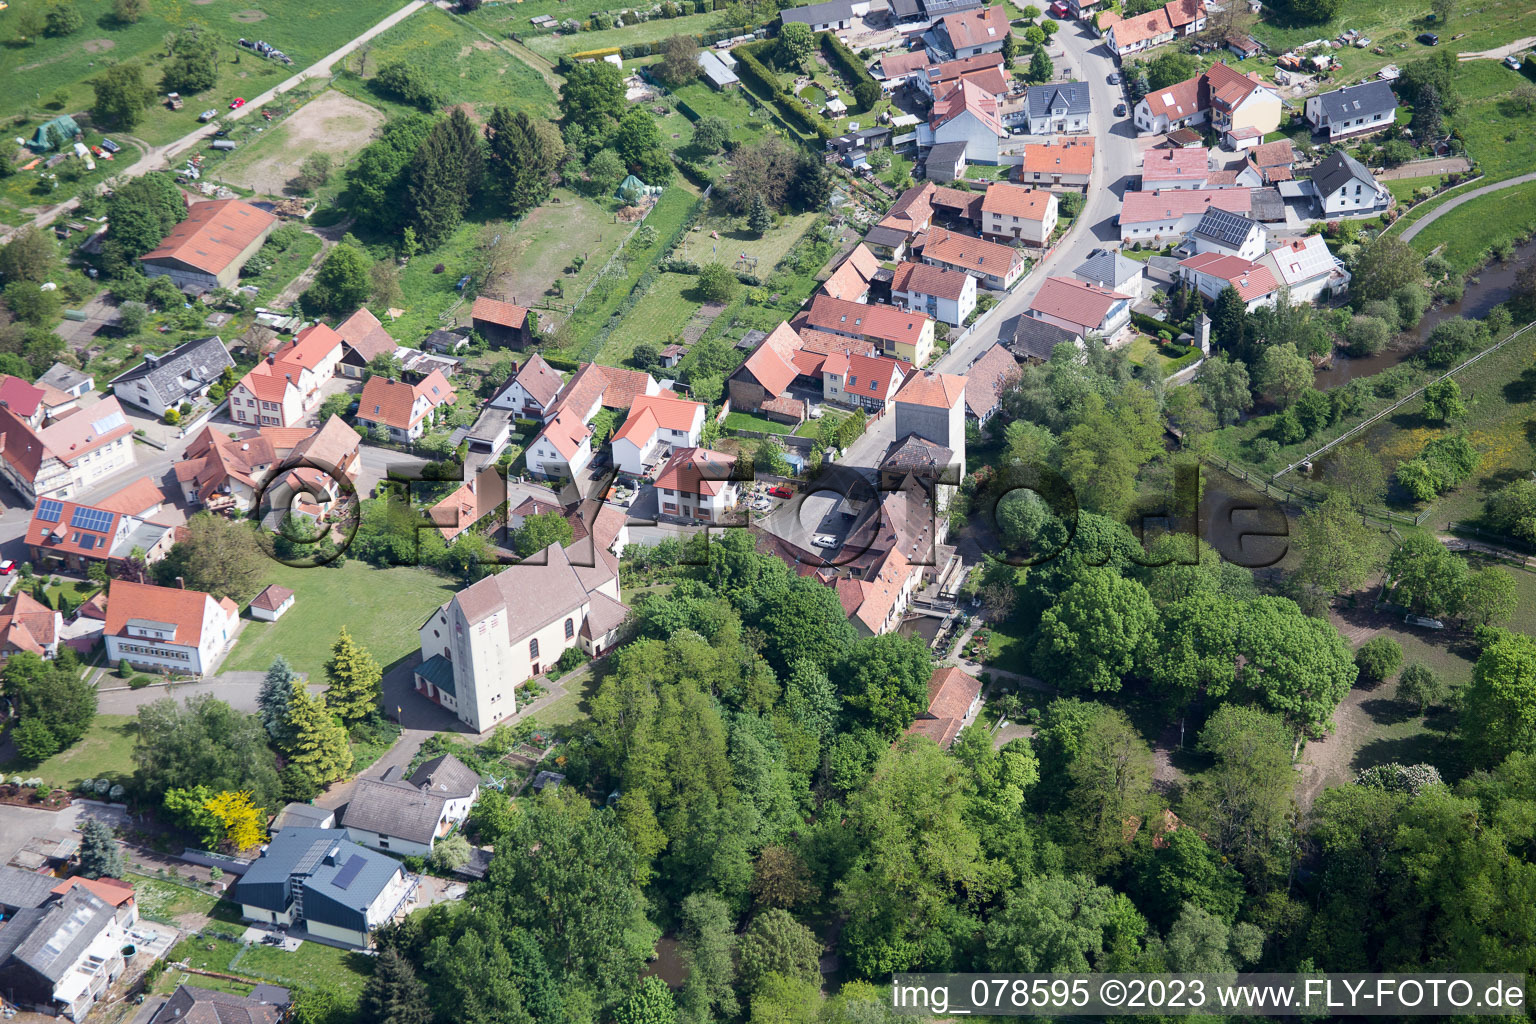 Berg im Bundesland Rheinland-Pfalz, Deutschland aus der Luft betrachtet